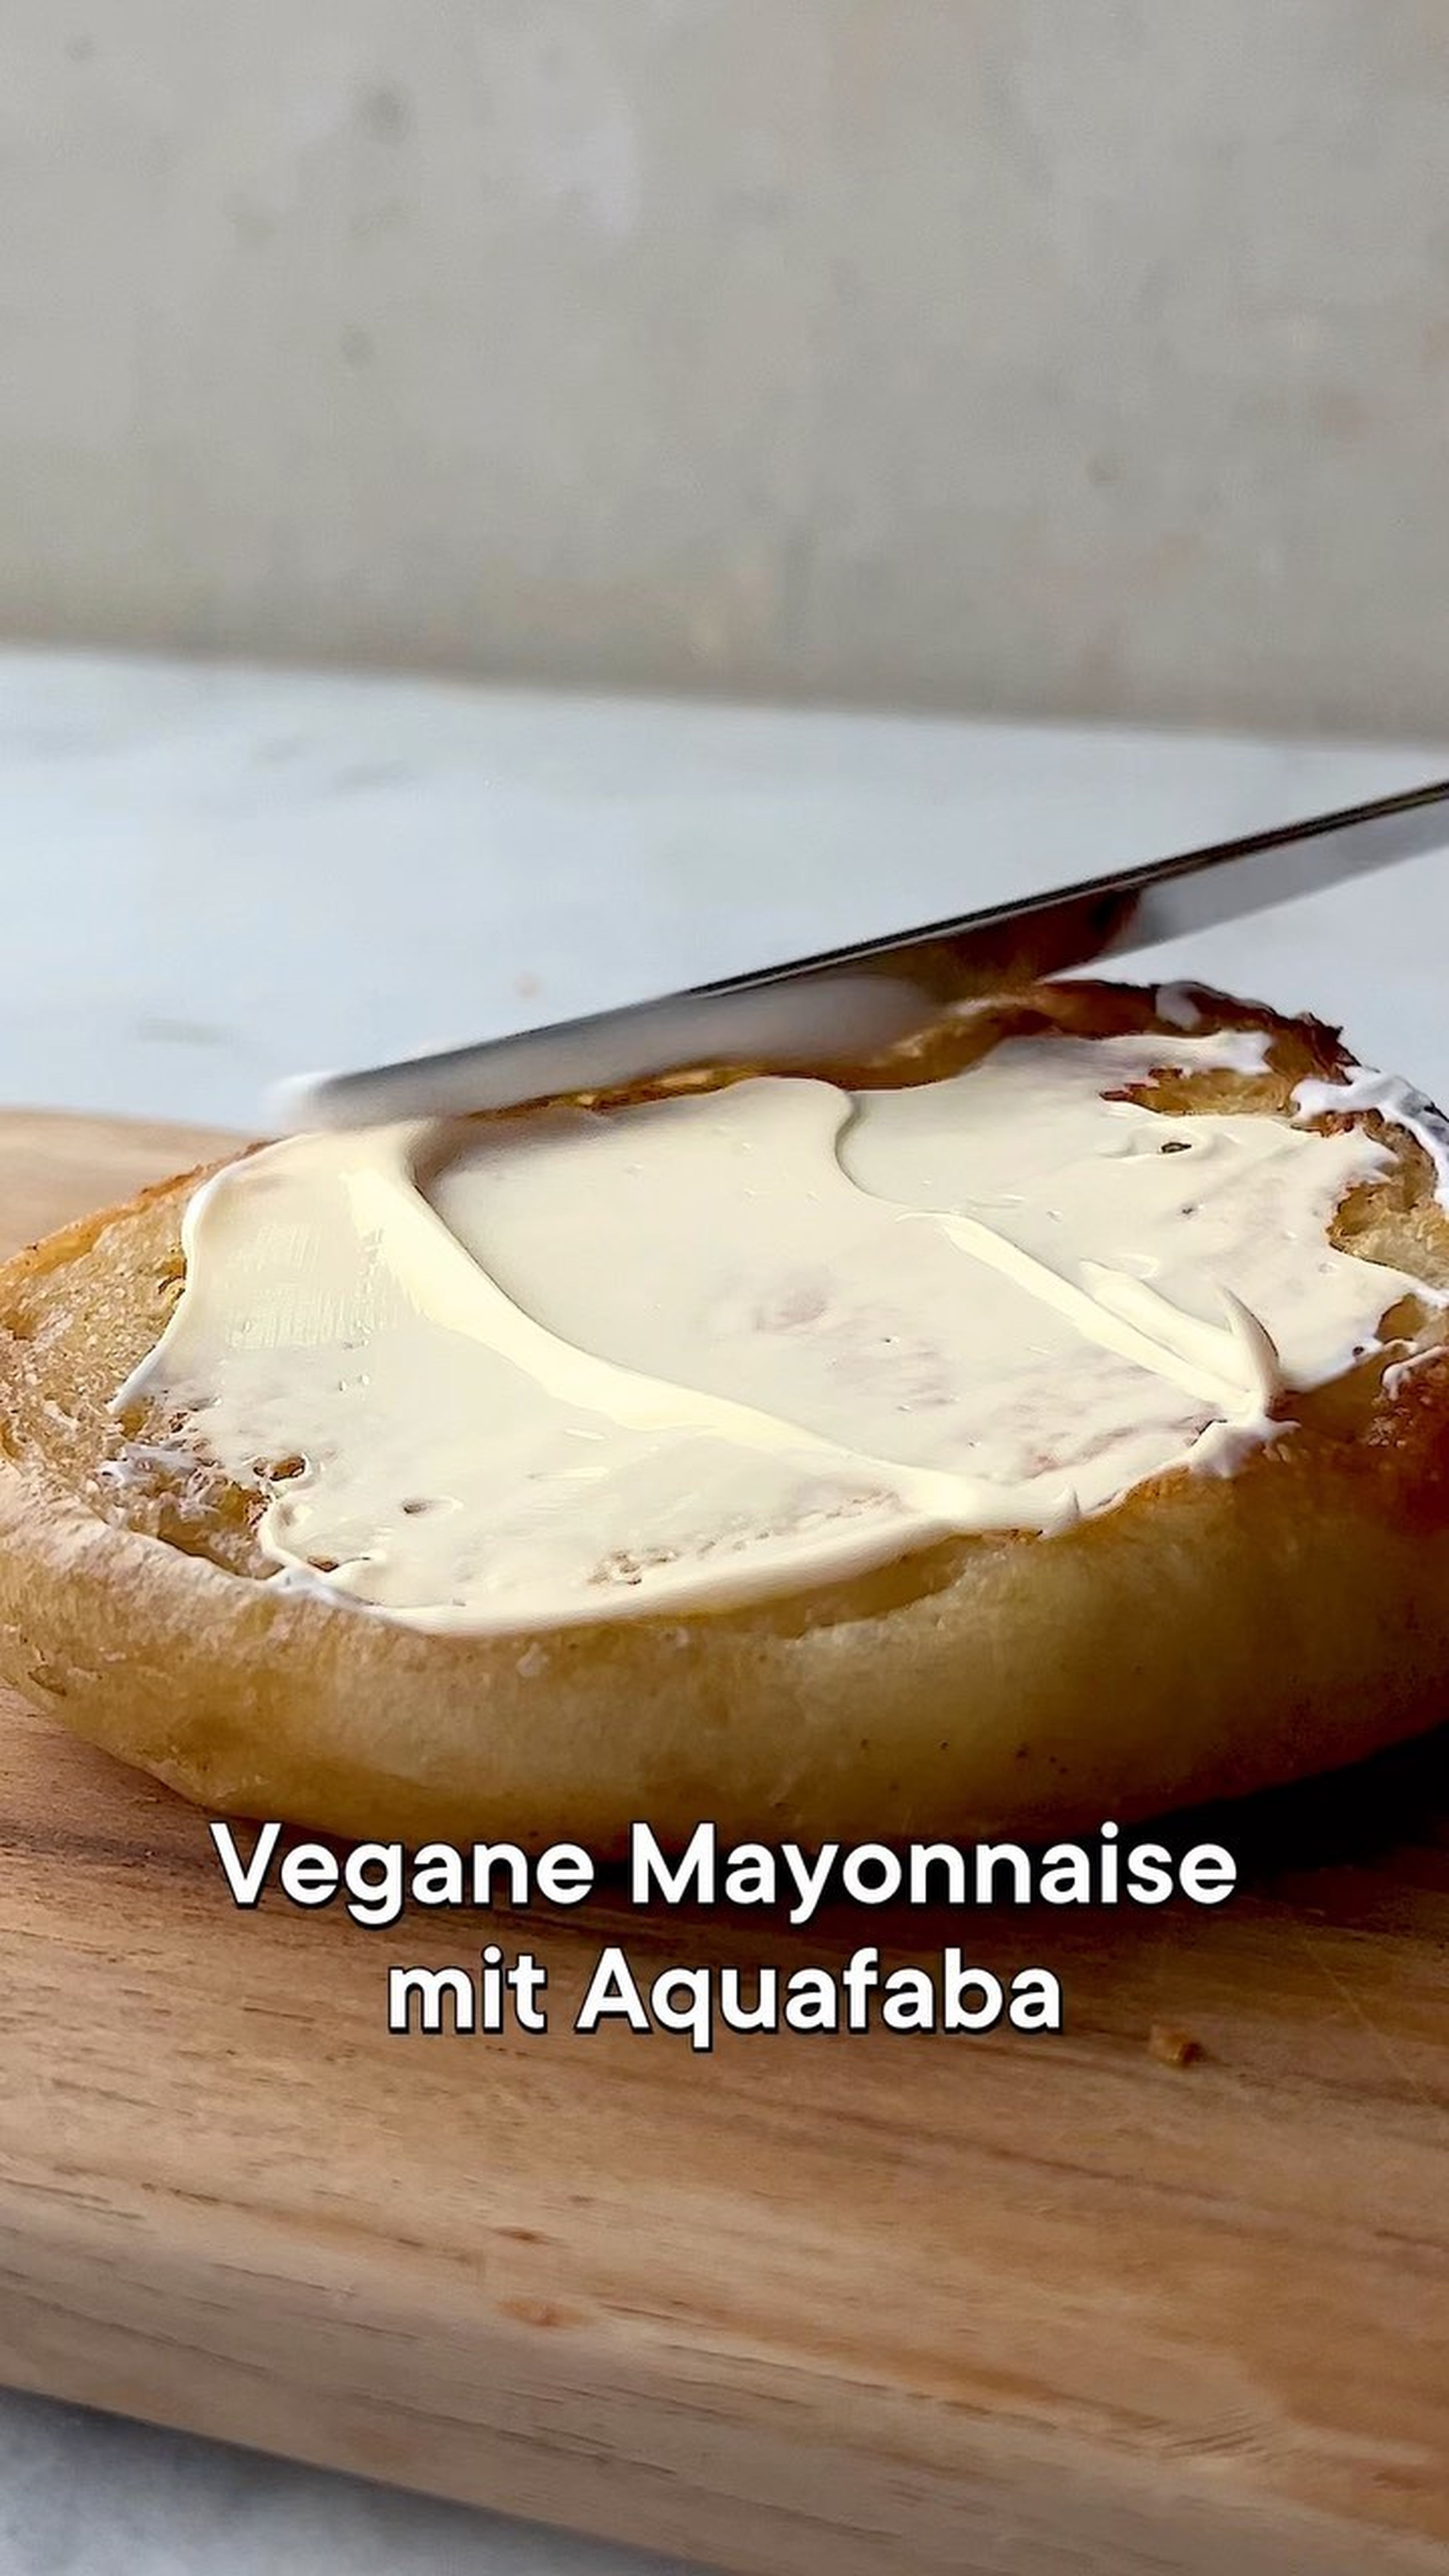 Vegan mayonnaise with aquafaba